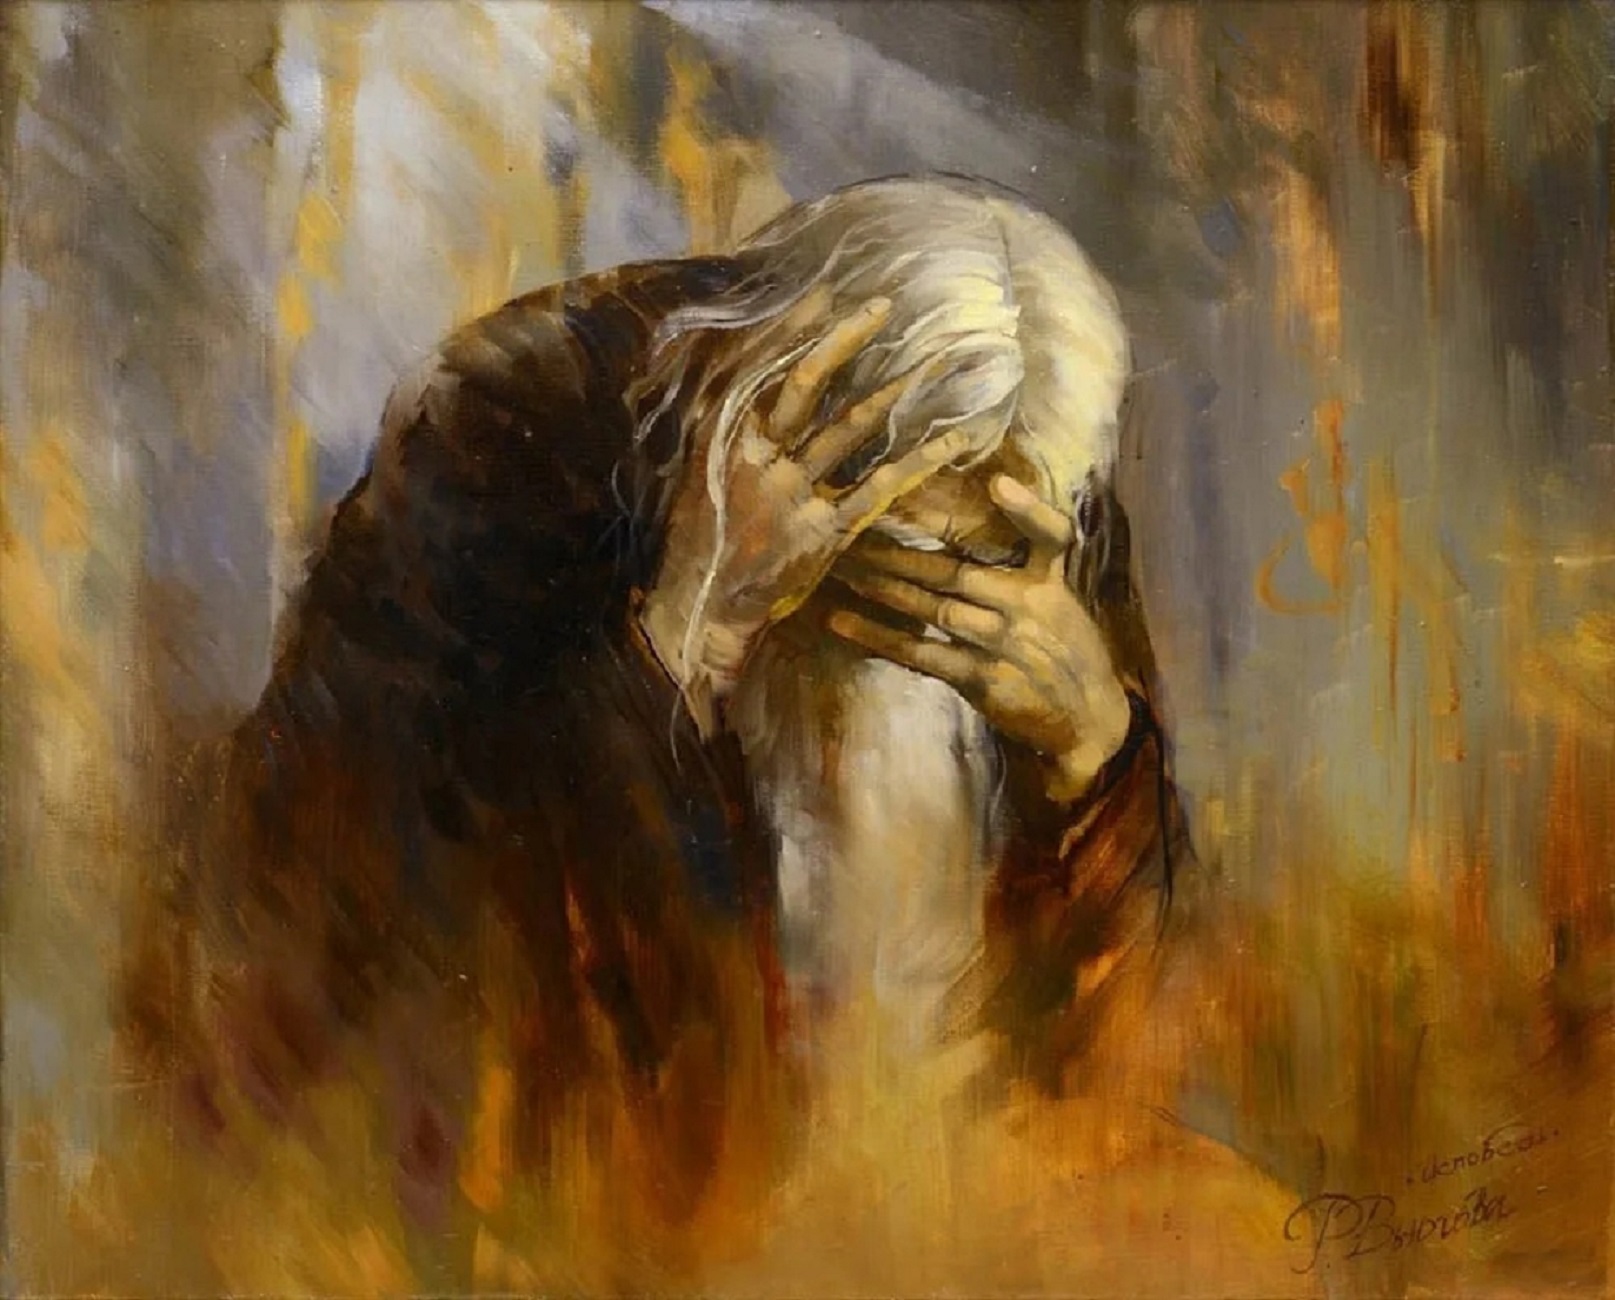 Размышления о боге. Картина Исповедь Вьюгова. Печаль в живописи.